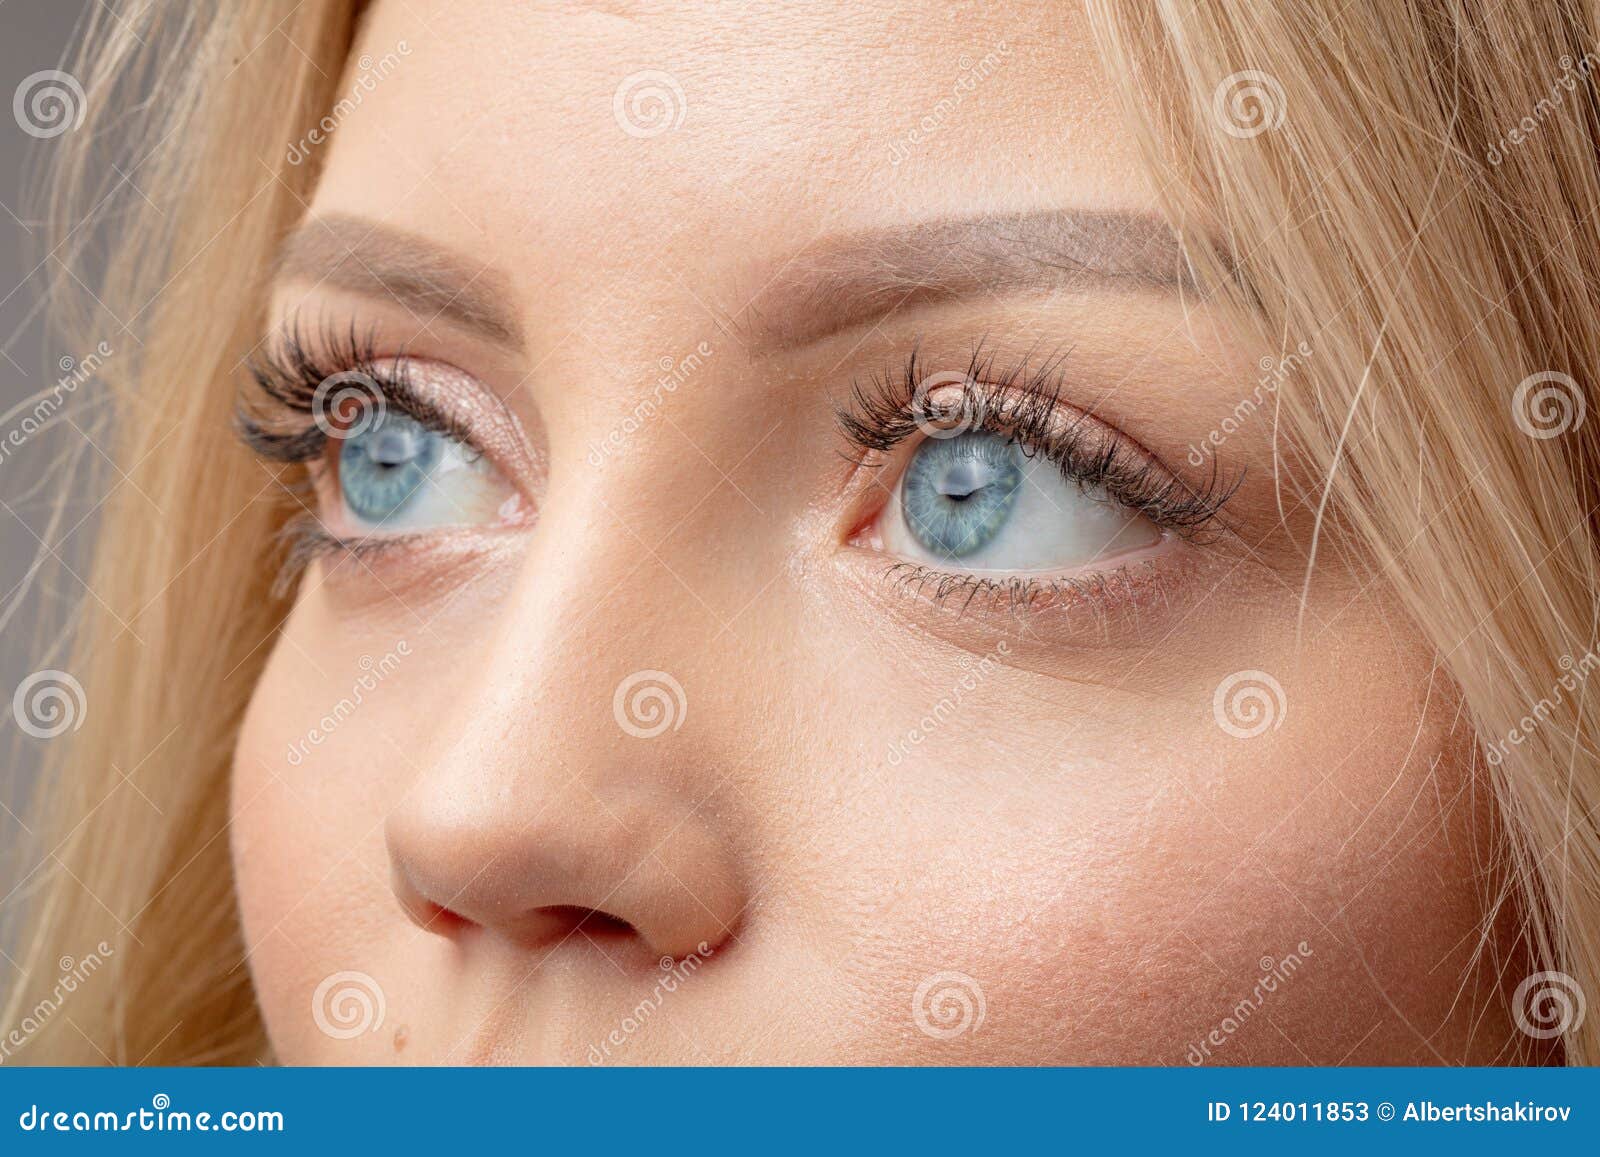 Очаровательная блондиночка с голубыми глазками